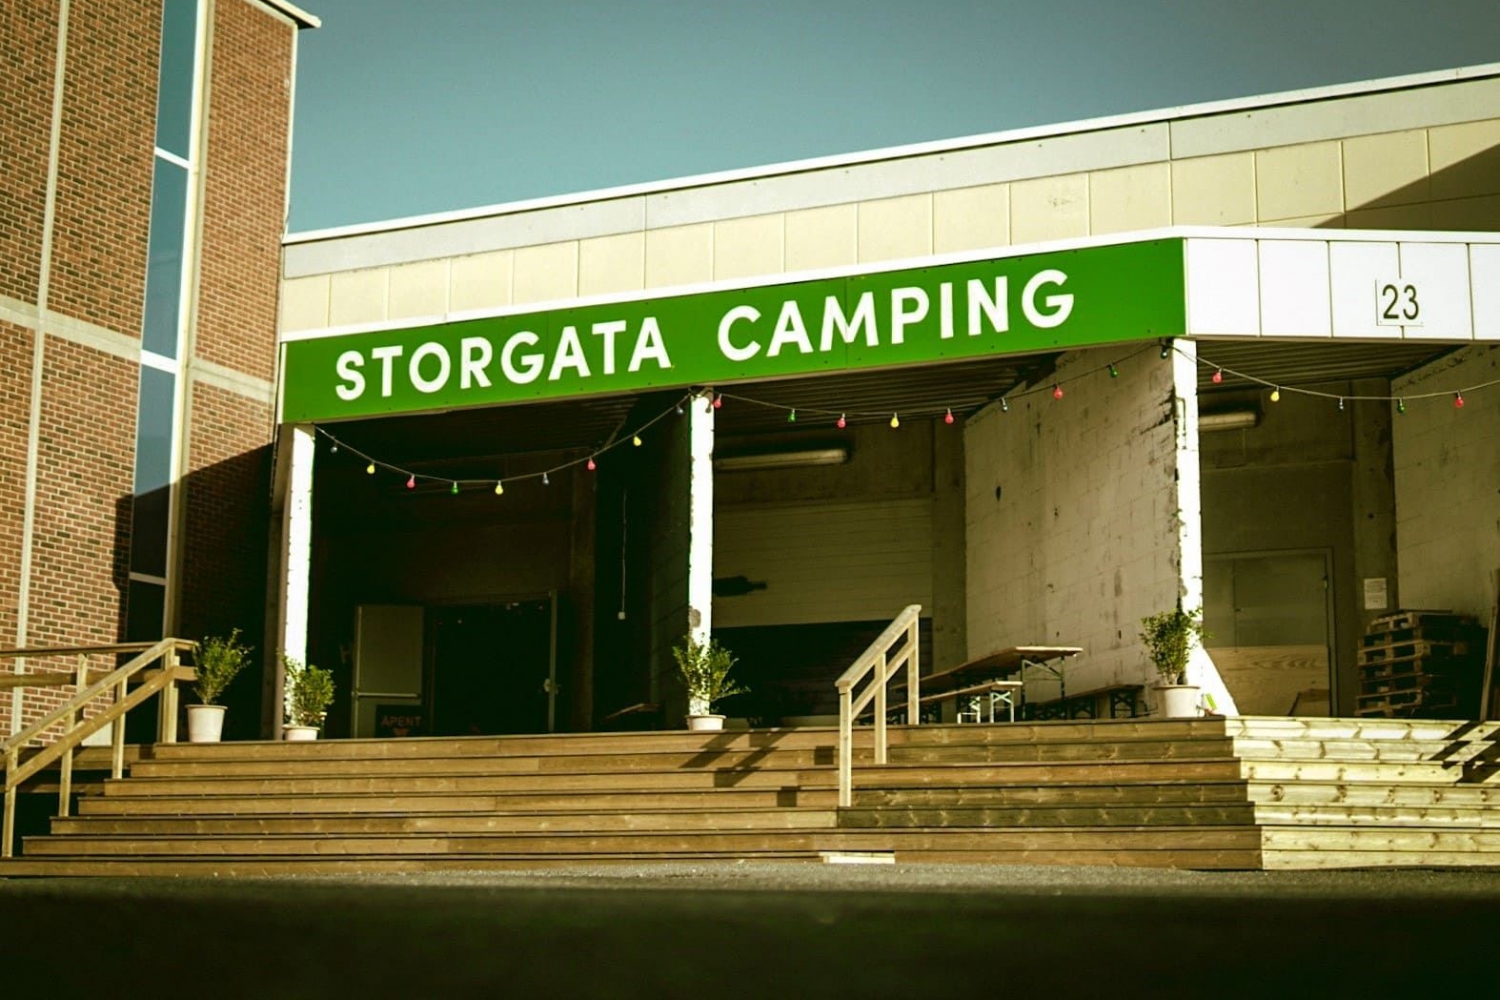 Storgata Camping fasade